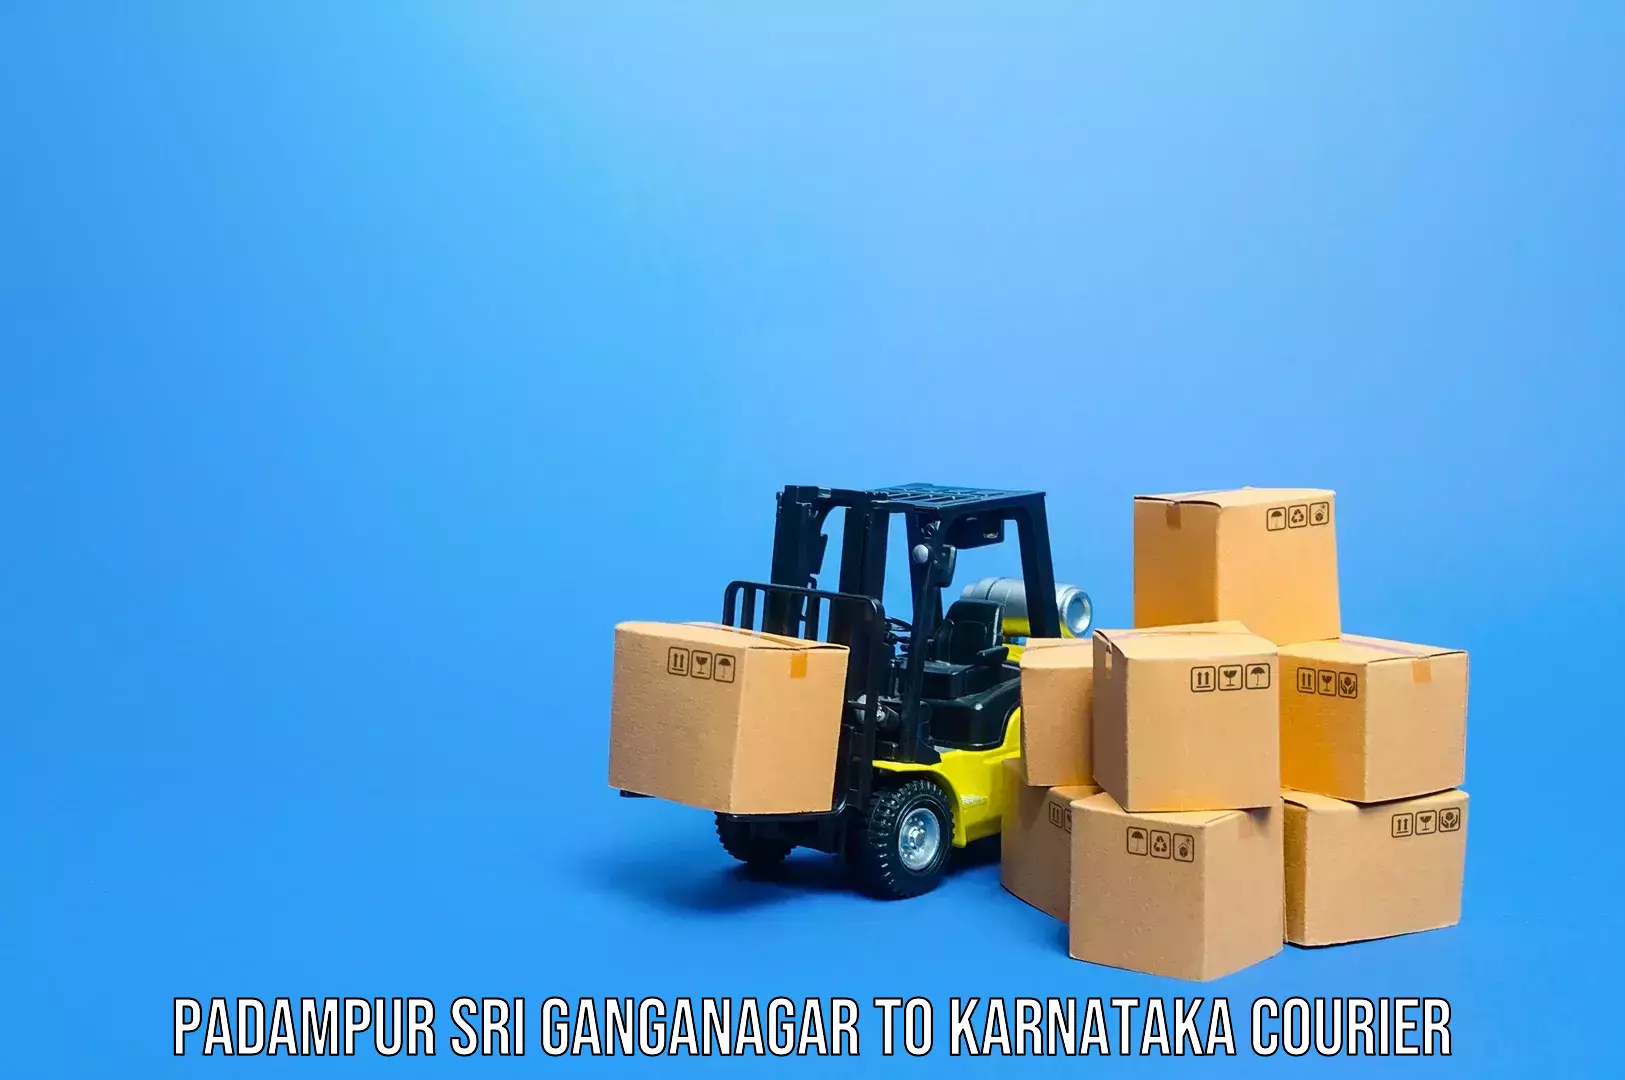 Efficient luggage delivery Padampur Sri Ganganagar to Yadgiri